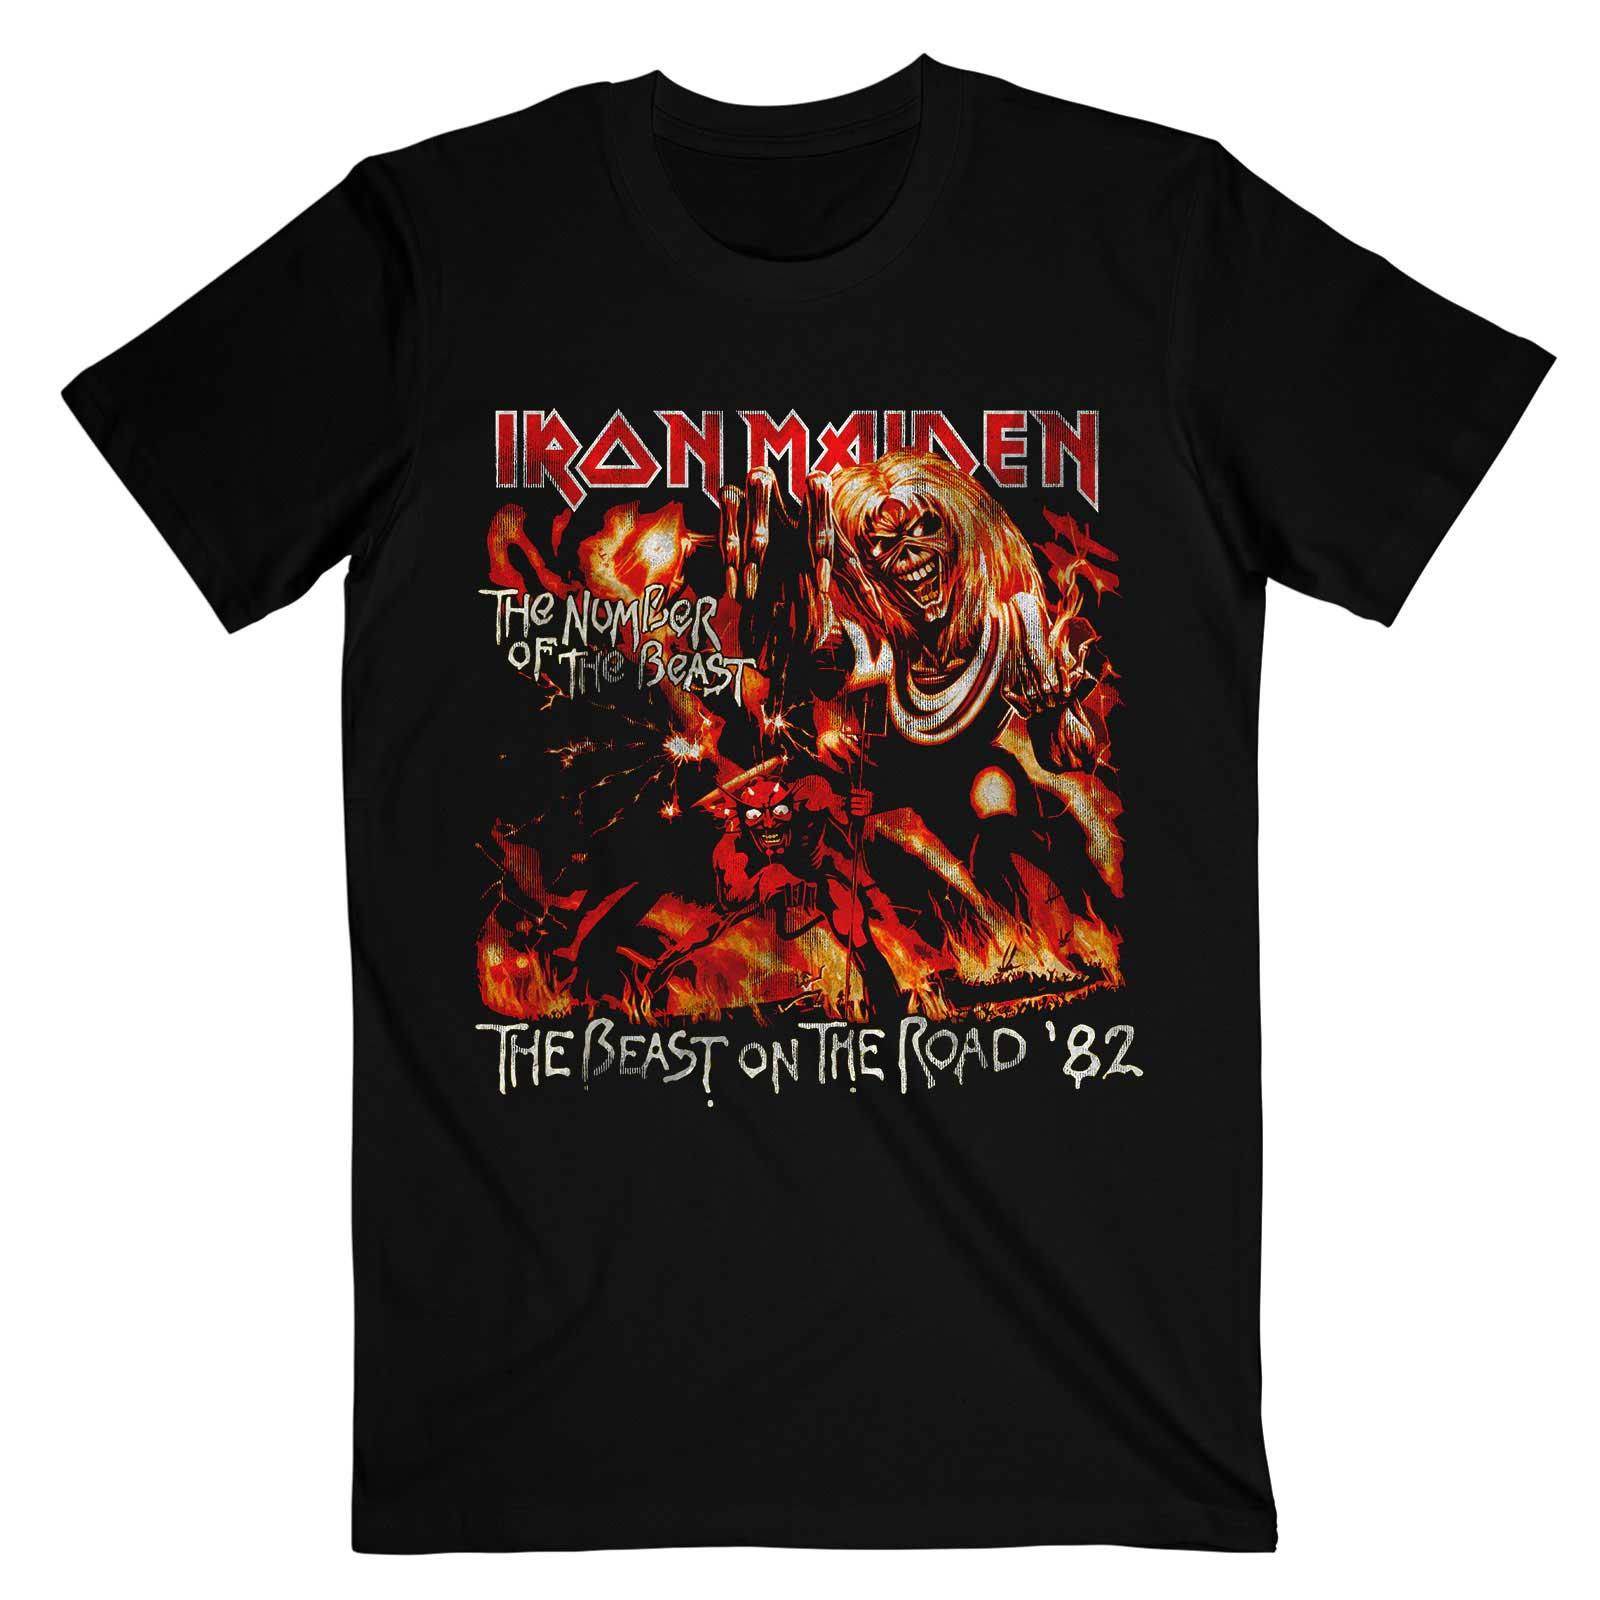 (アイアン・メイデン) Iron Maiden オフィシャル商品 ユニセックス Number Of The Beast On The Road Tシャツ ビンテージ風 コットン 半袖 トップス 【海外通販】